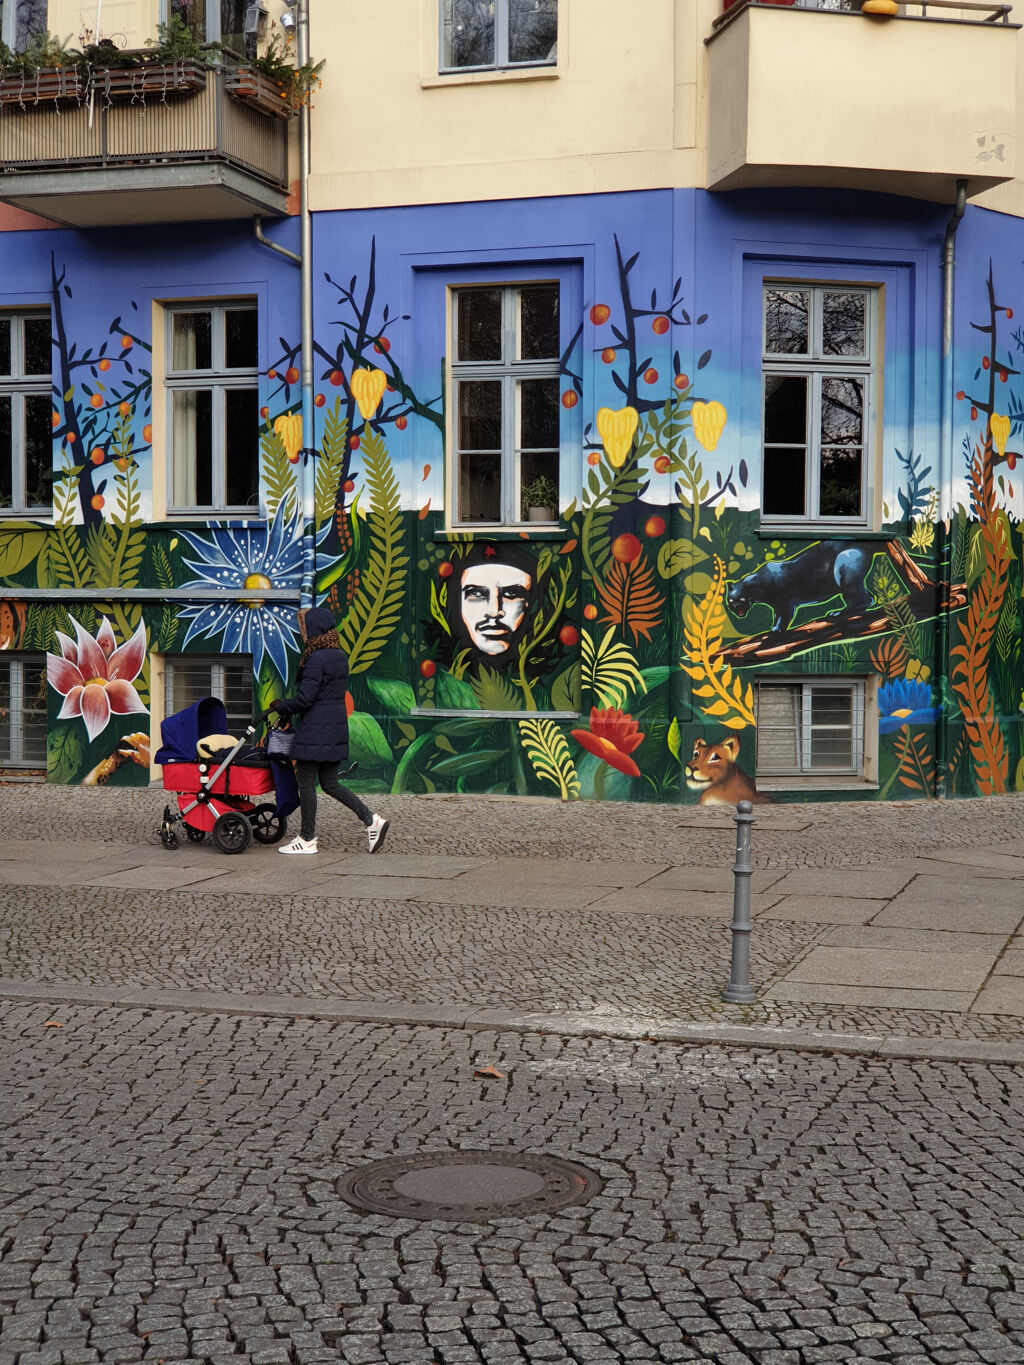 mural by Spray City, Tasd, Tras, Fuchur, Bandit - Street Art Cities